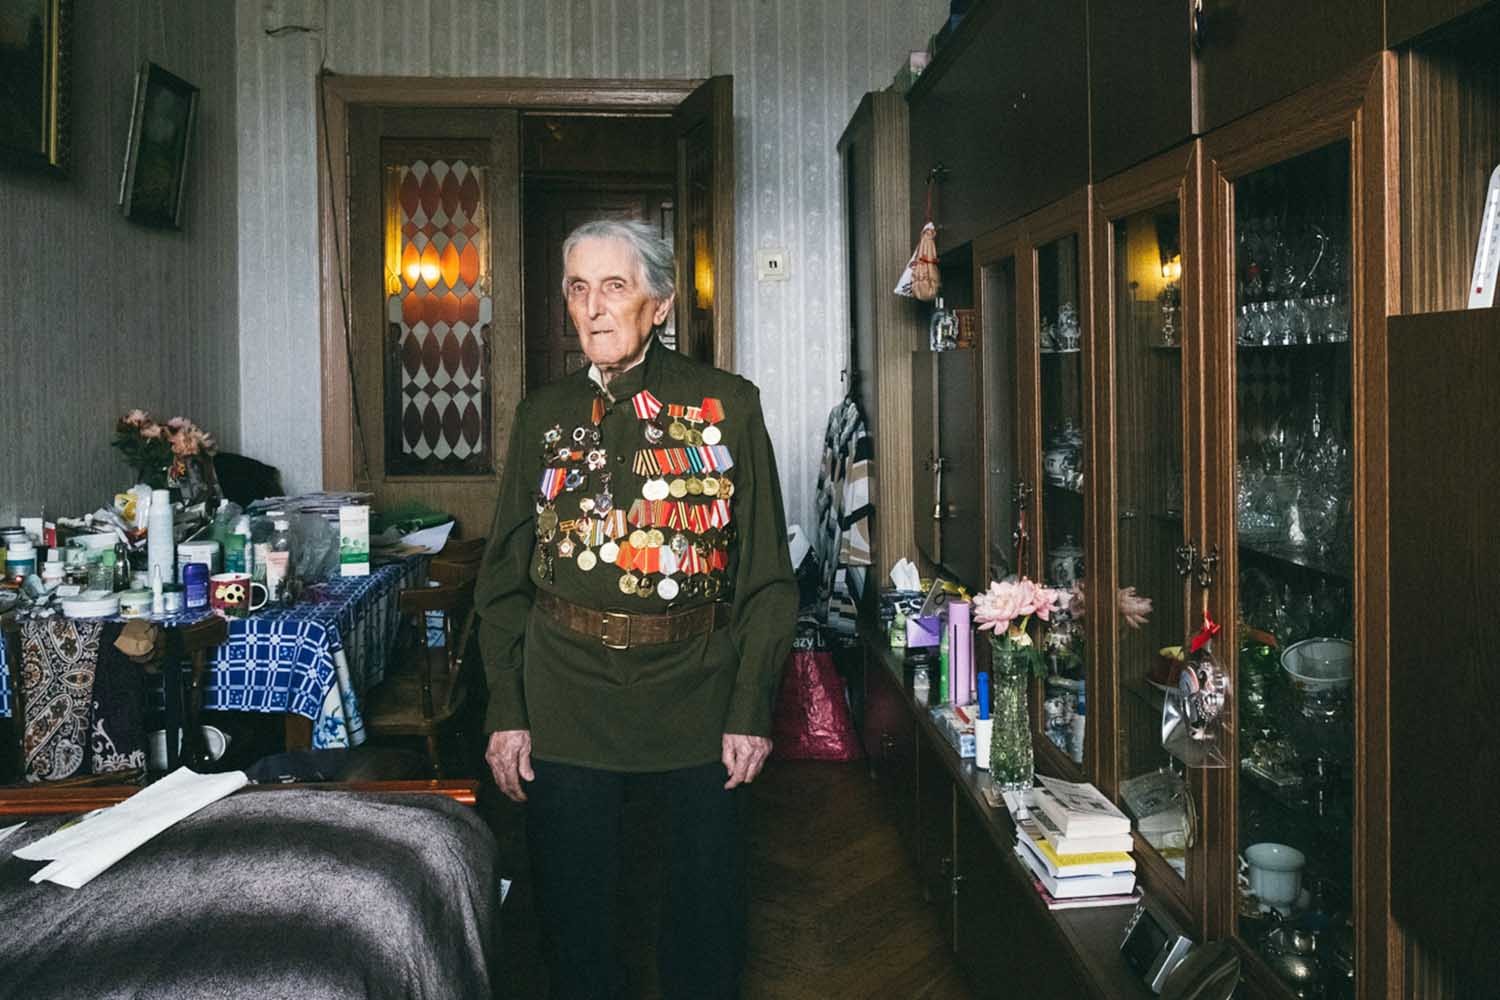 «Смерть — не самое страшное»: о чём вспоминают ветераны войны, глядя на свои награды